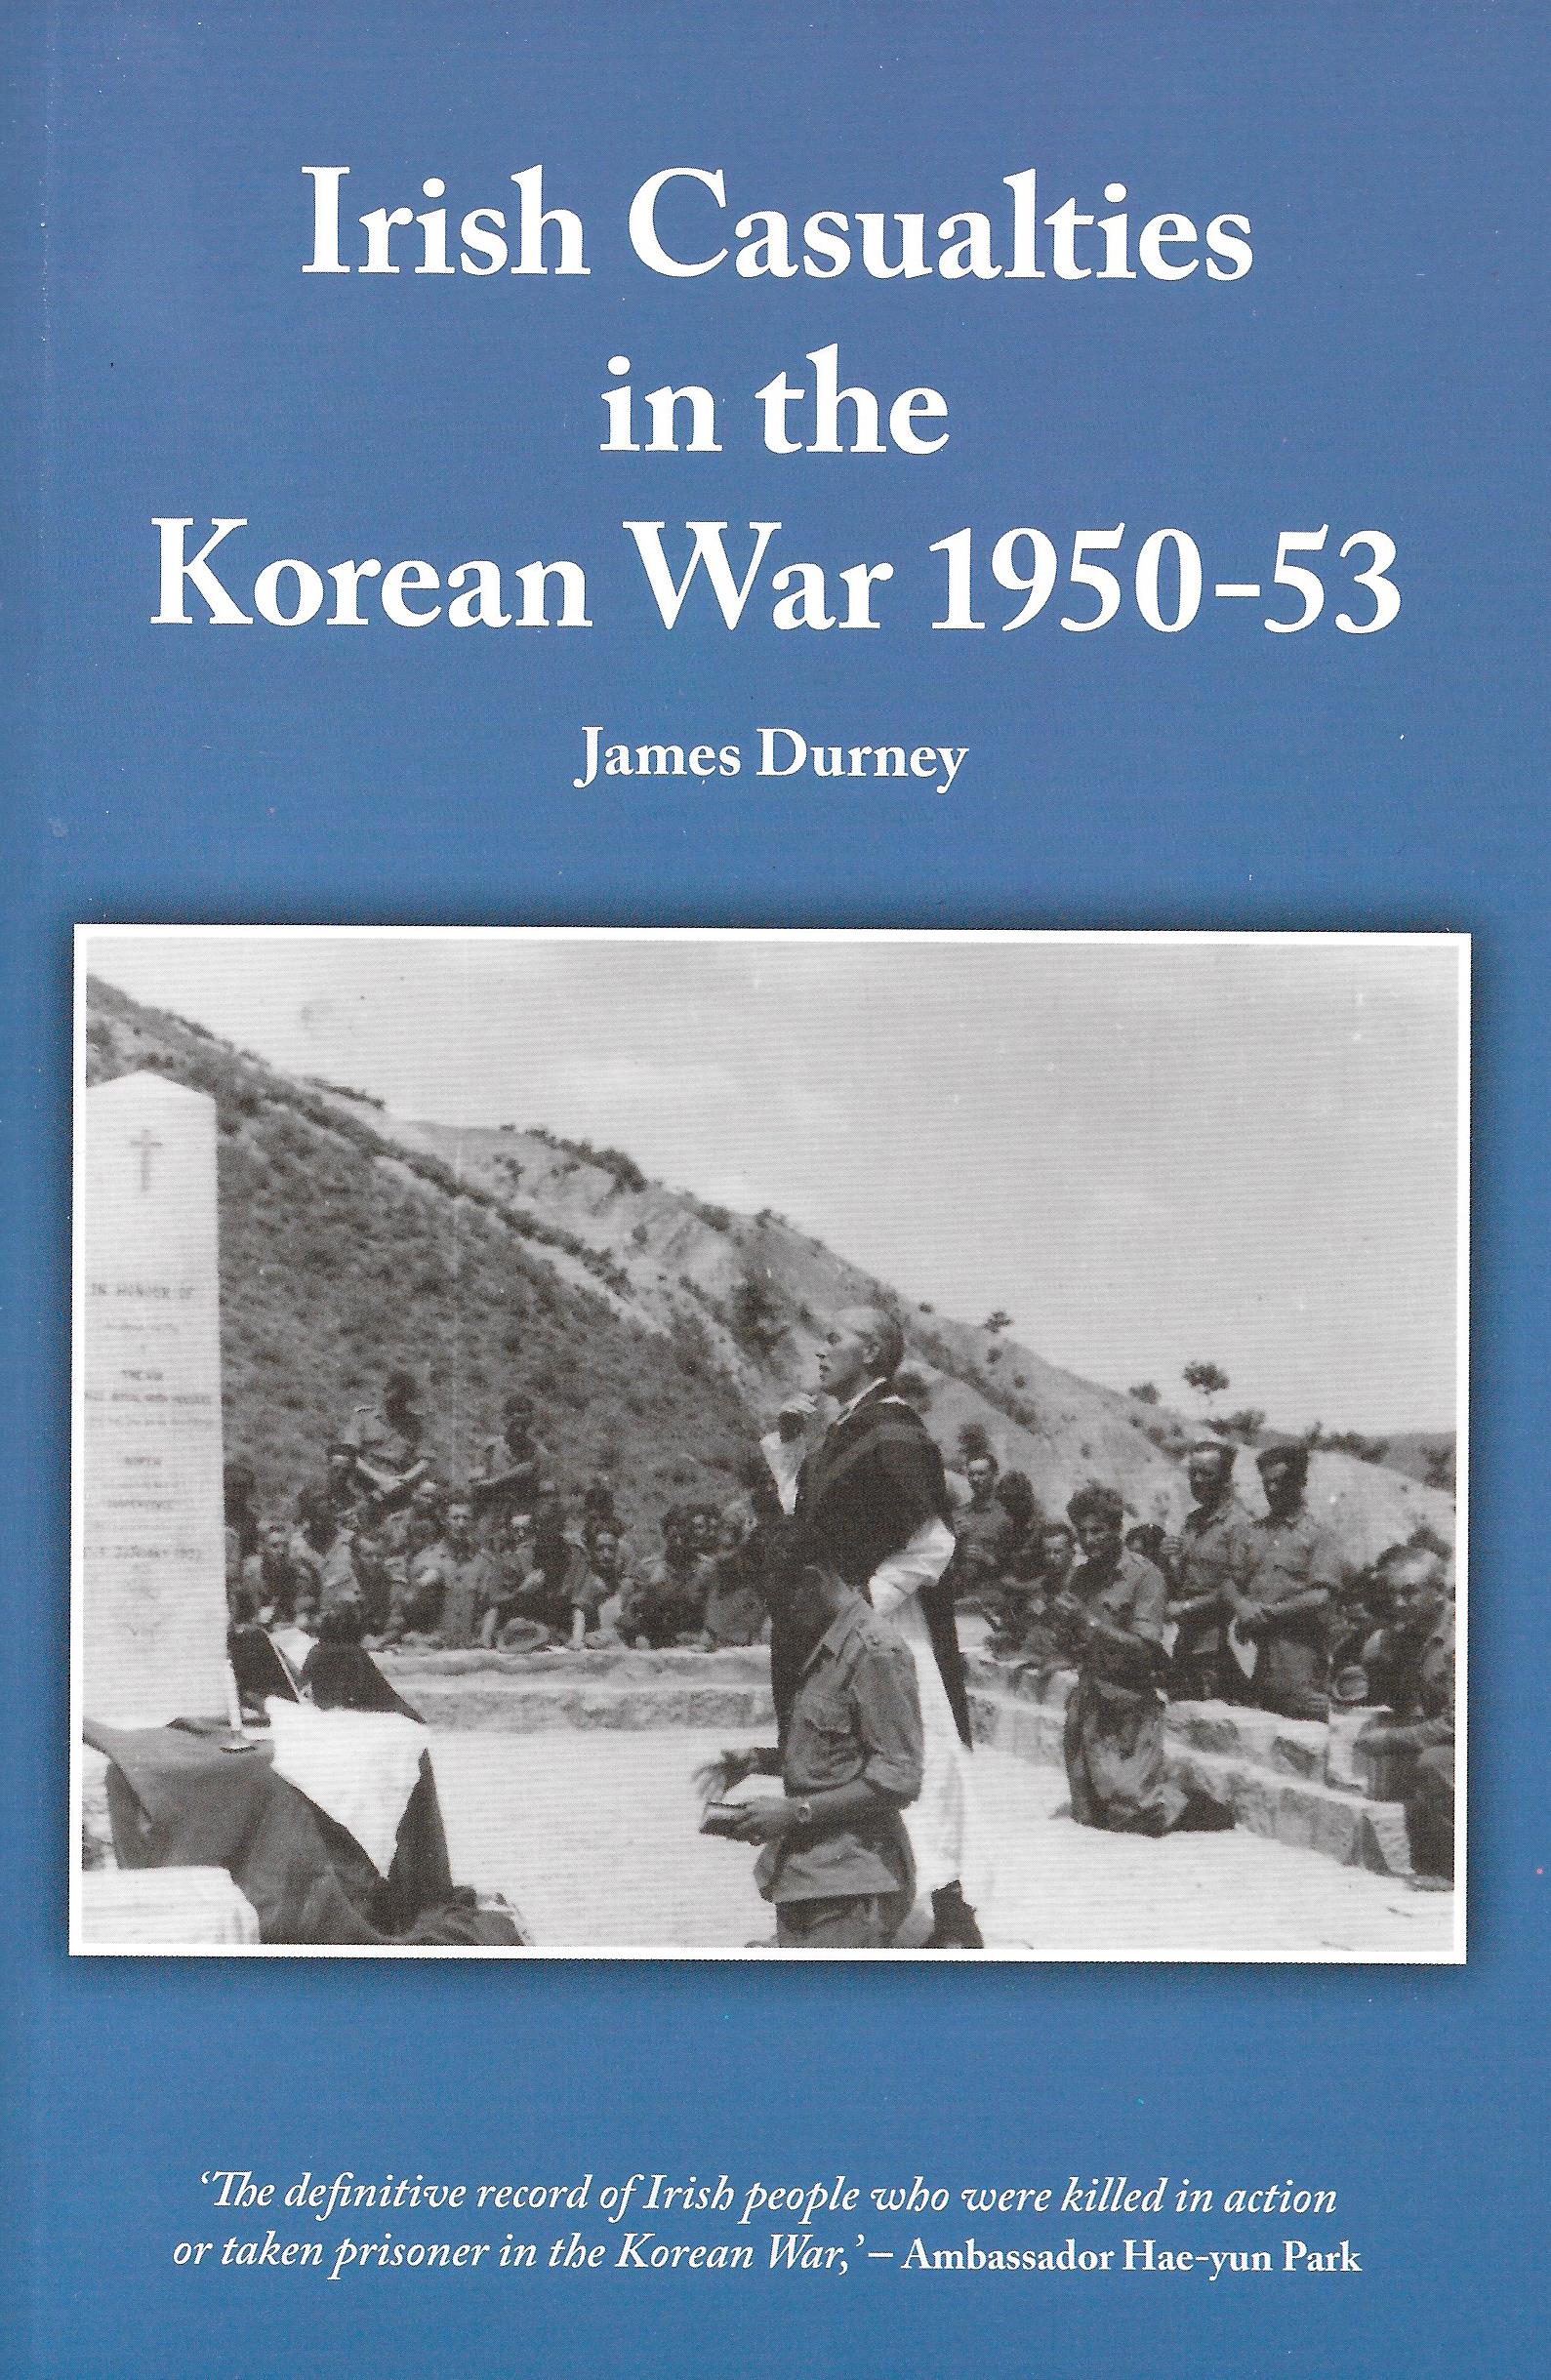 Irish Casualties in the Korean War 1950 - 53